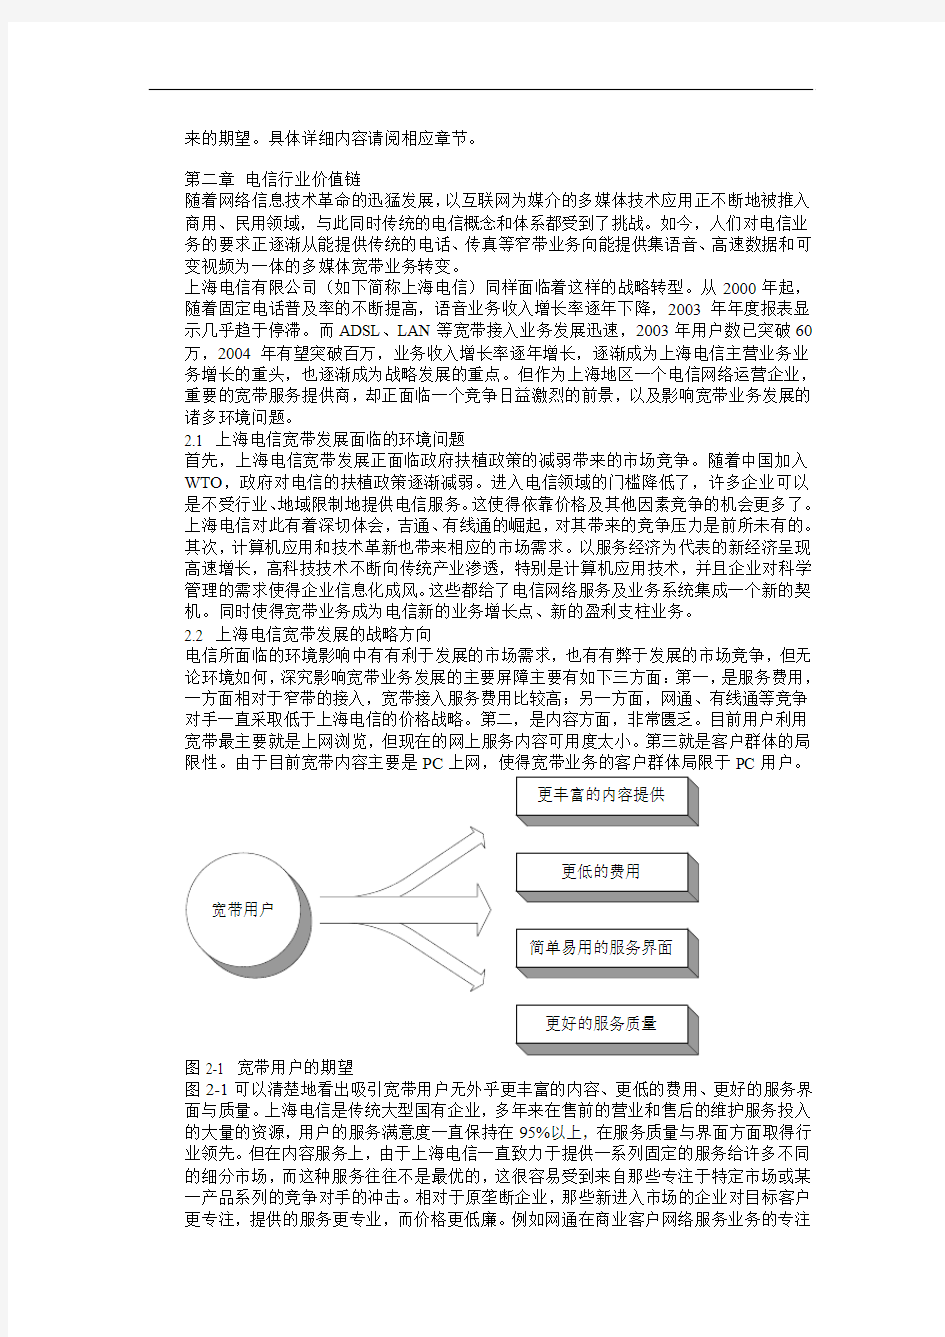 上海电信宽带业务拓展中的互动数字电视项目